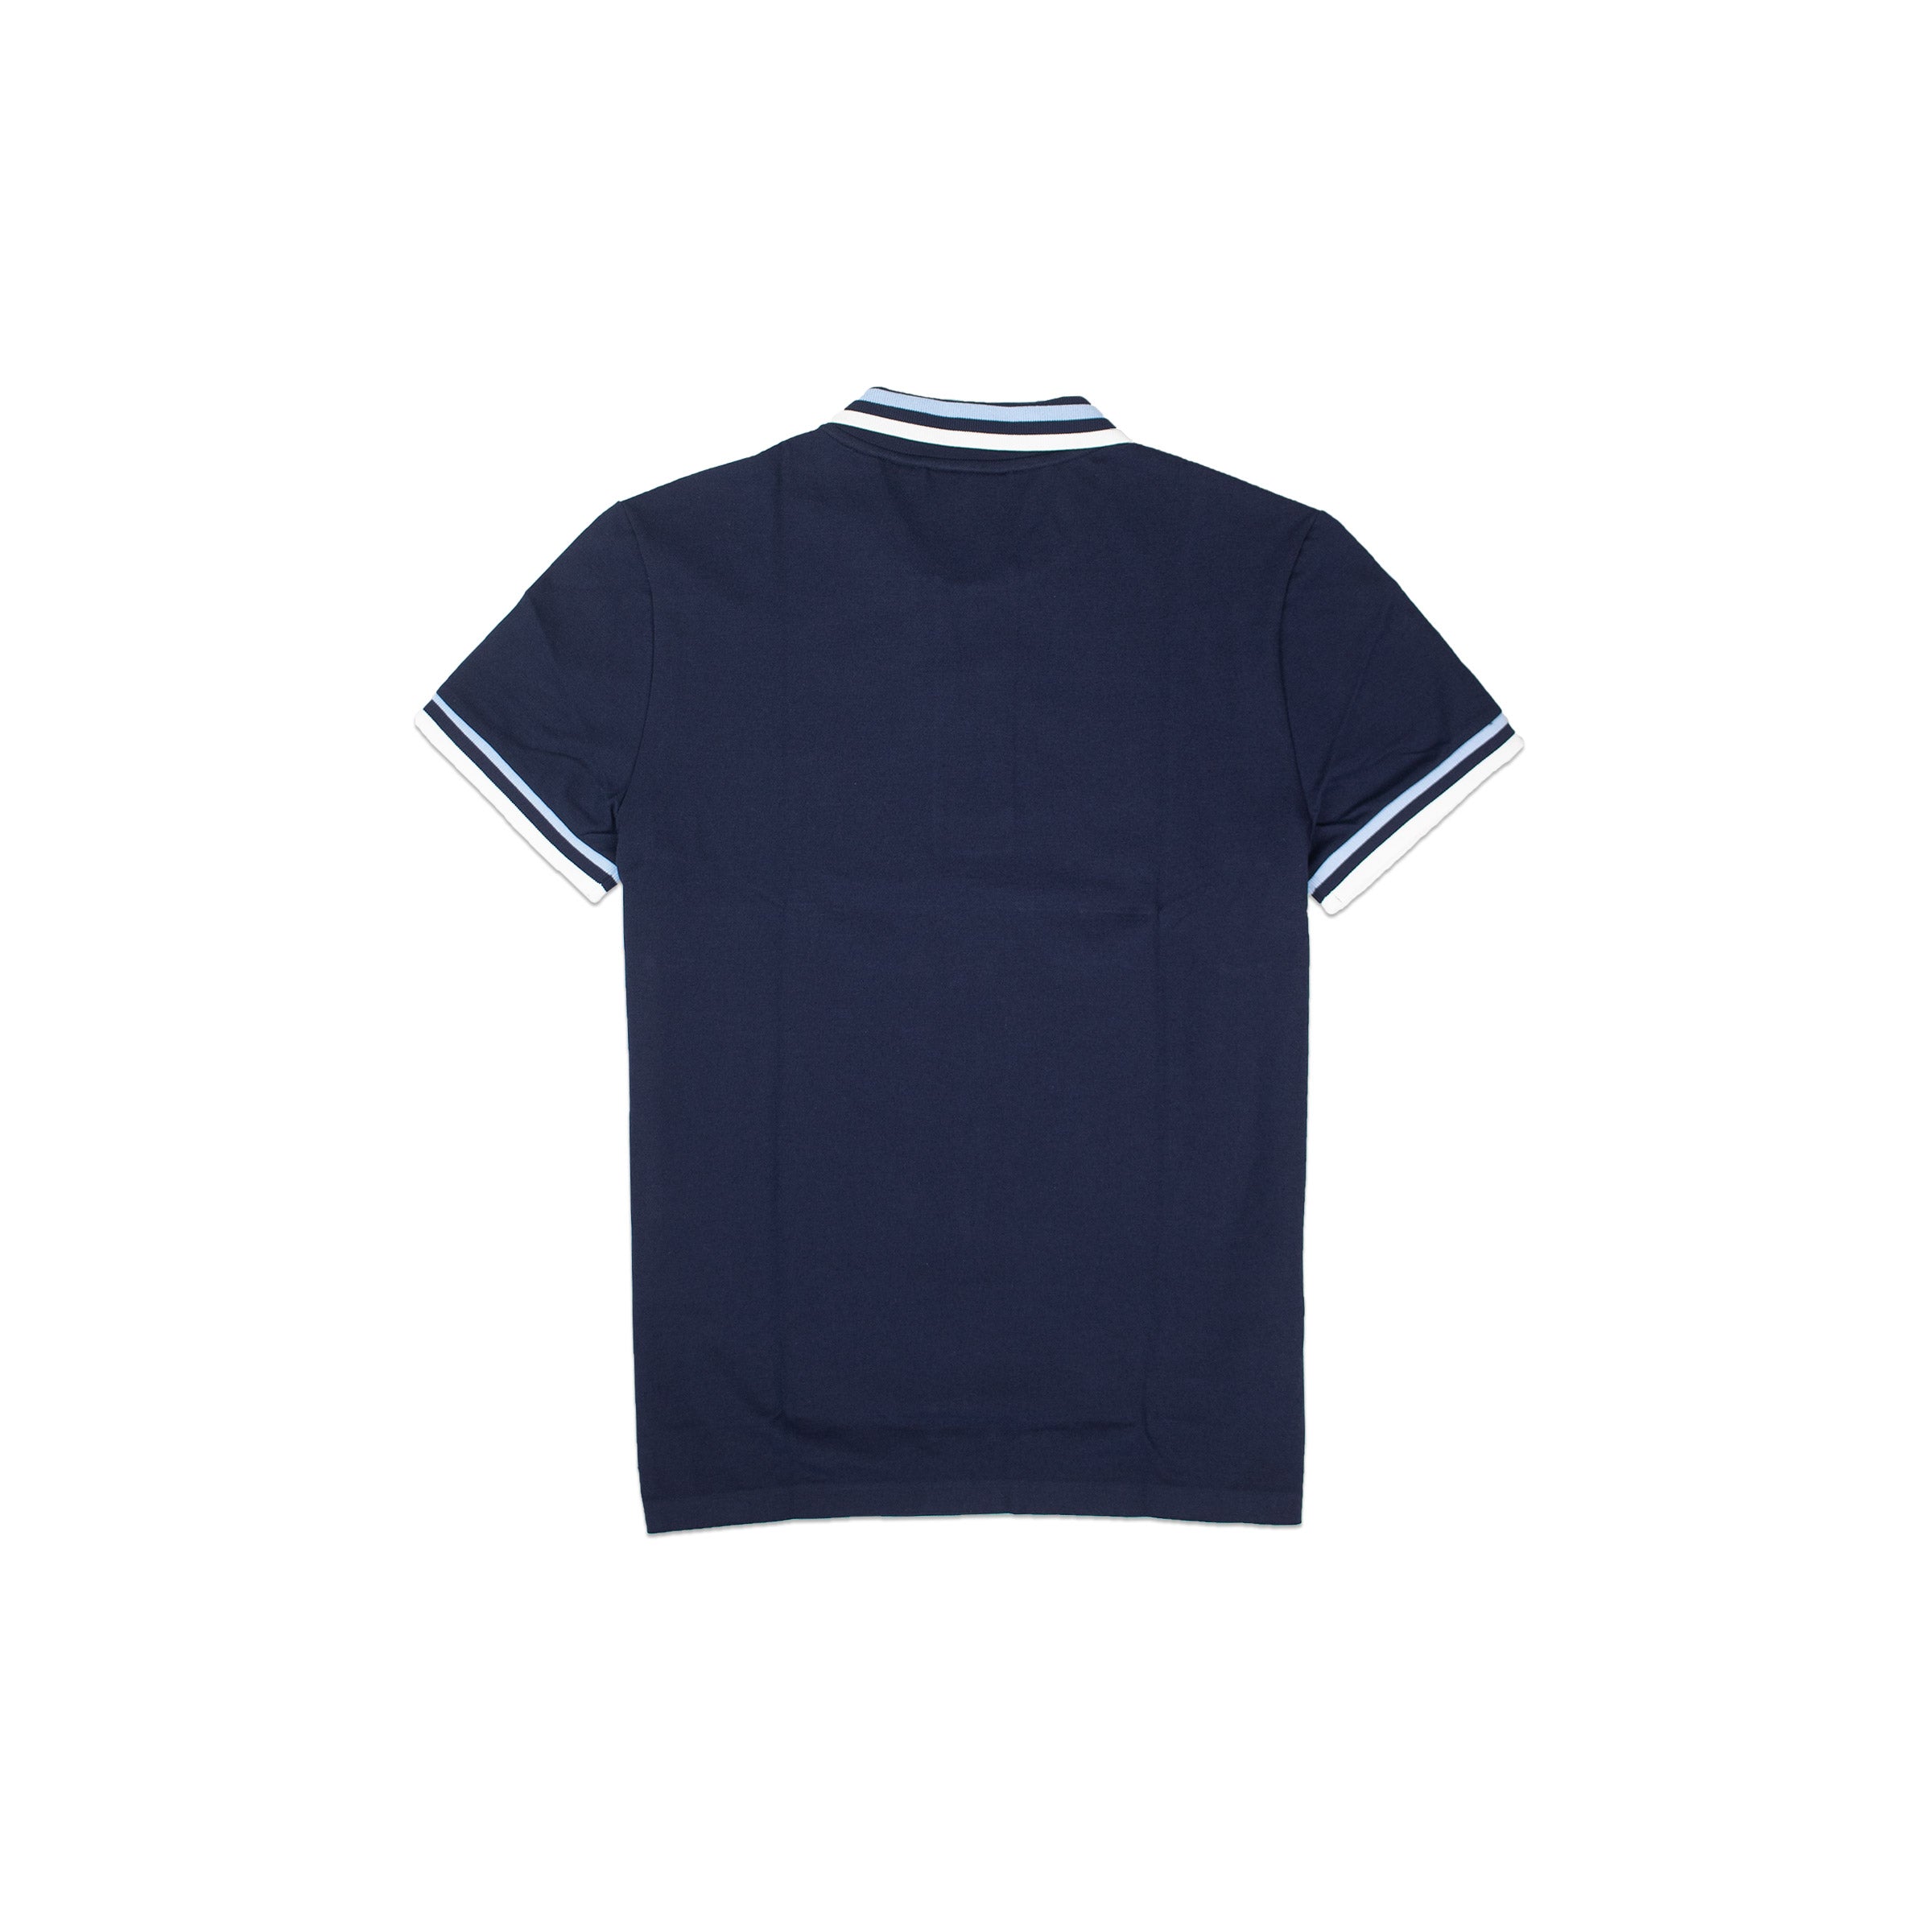 Lacoste, Shirts, Lacoste Mens 2xb Big Navy Blue Pique Pullover Mesh Pique Polo  Shirt Euc